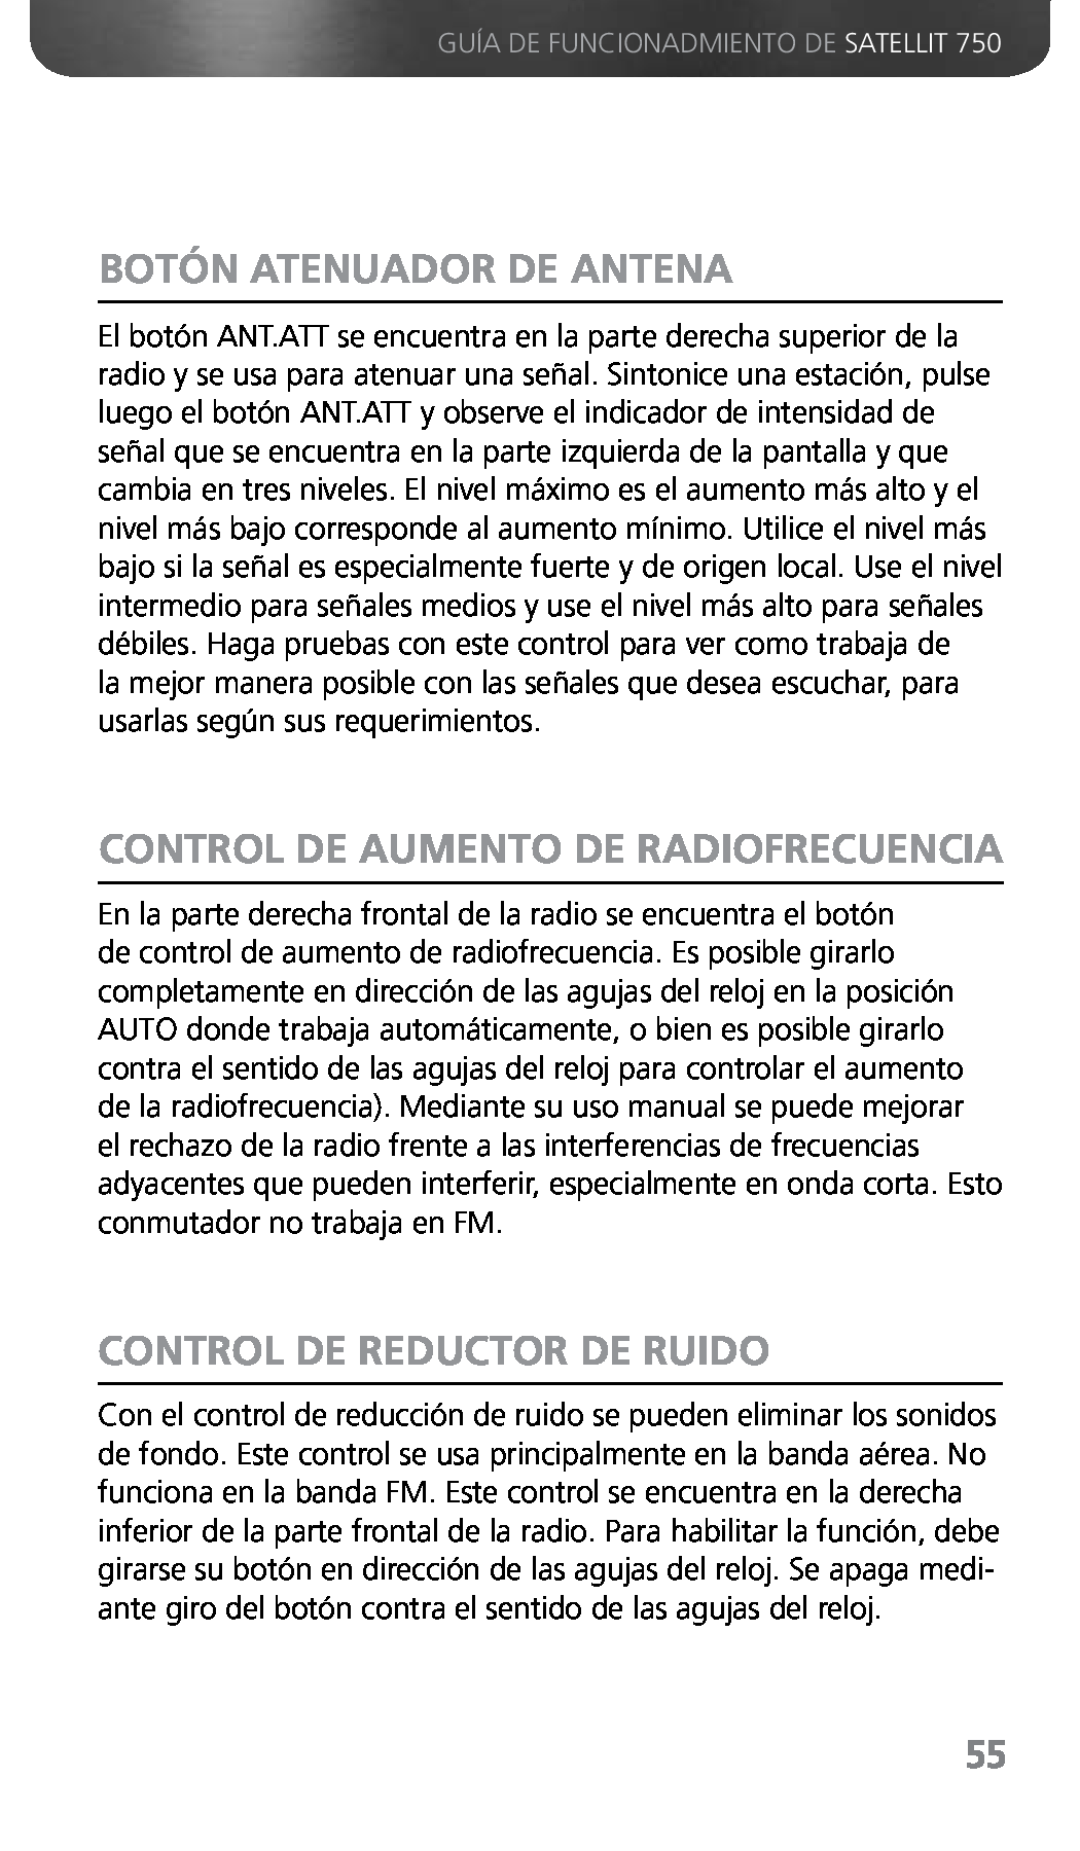 Grundig 750 owner manual Botón Atenuador De Antena, Control De Aumento De Radiofrecuencia, Control De Reductor De Ruido 